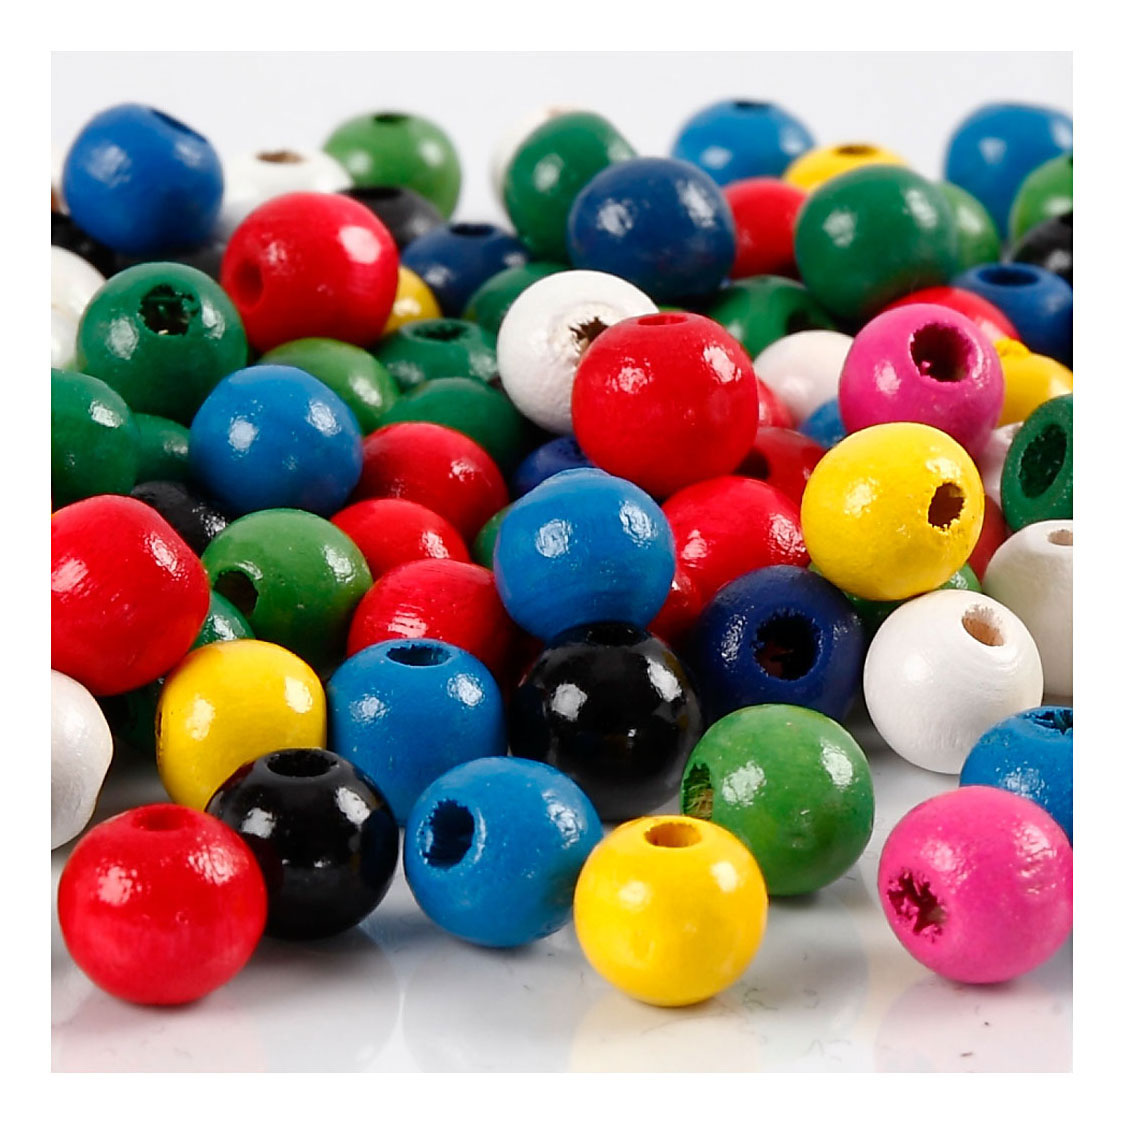 Perles en bois de différentes couleurs, 150 pièces.